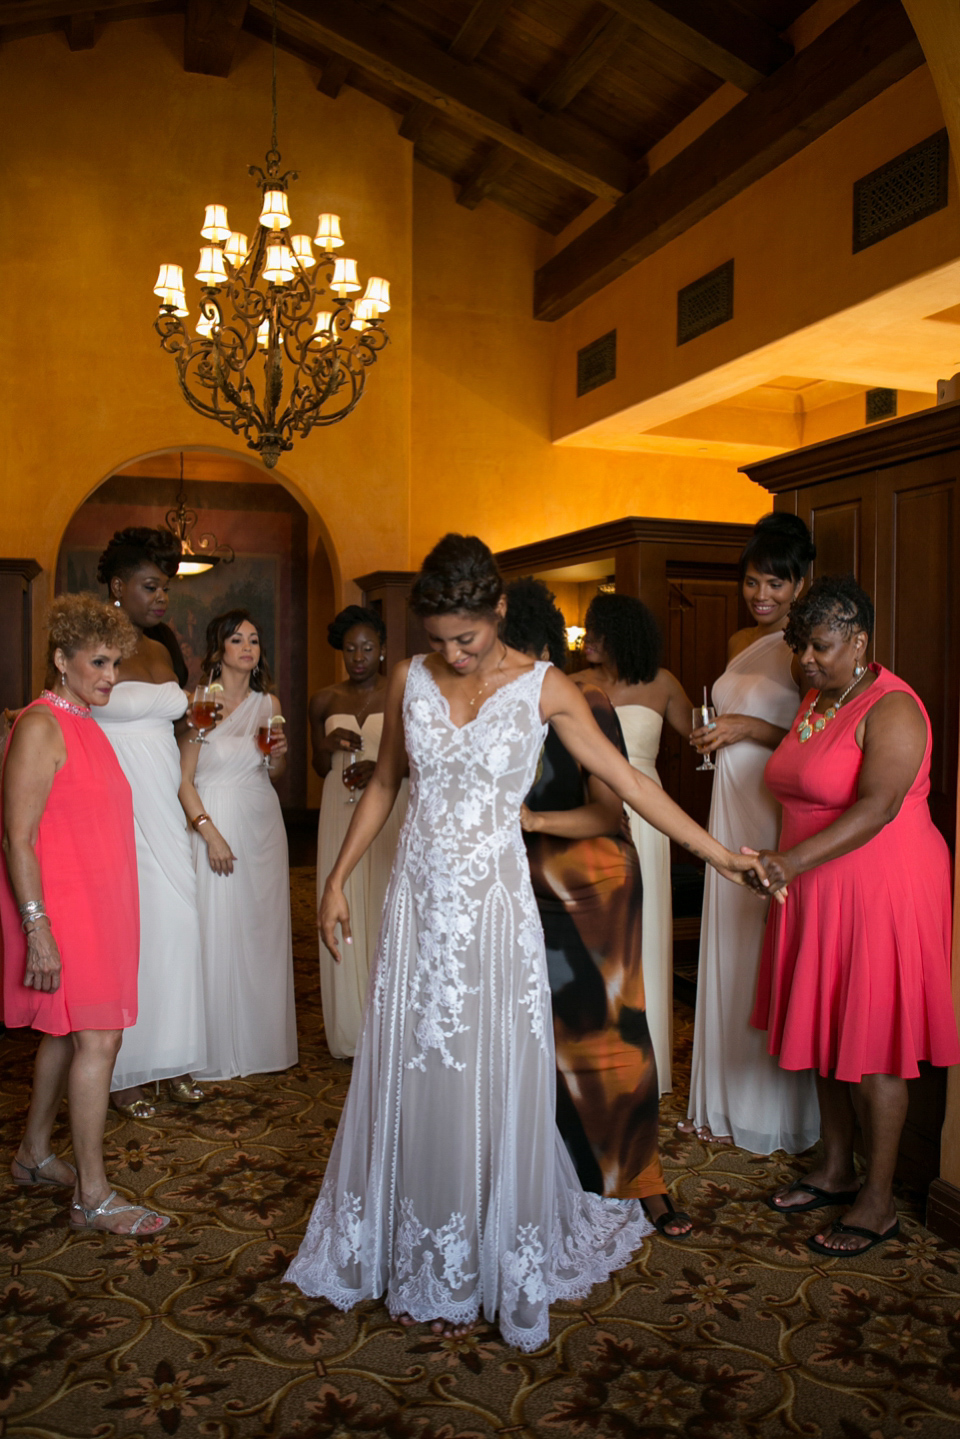 An Effortlessely Elegant Florida Wedding in Shades of Pretty Peach